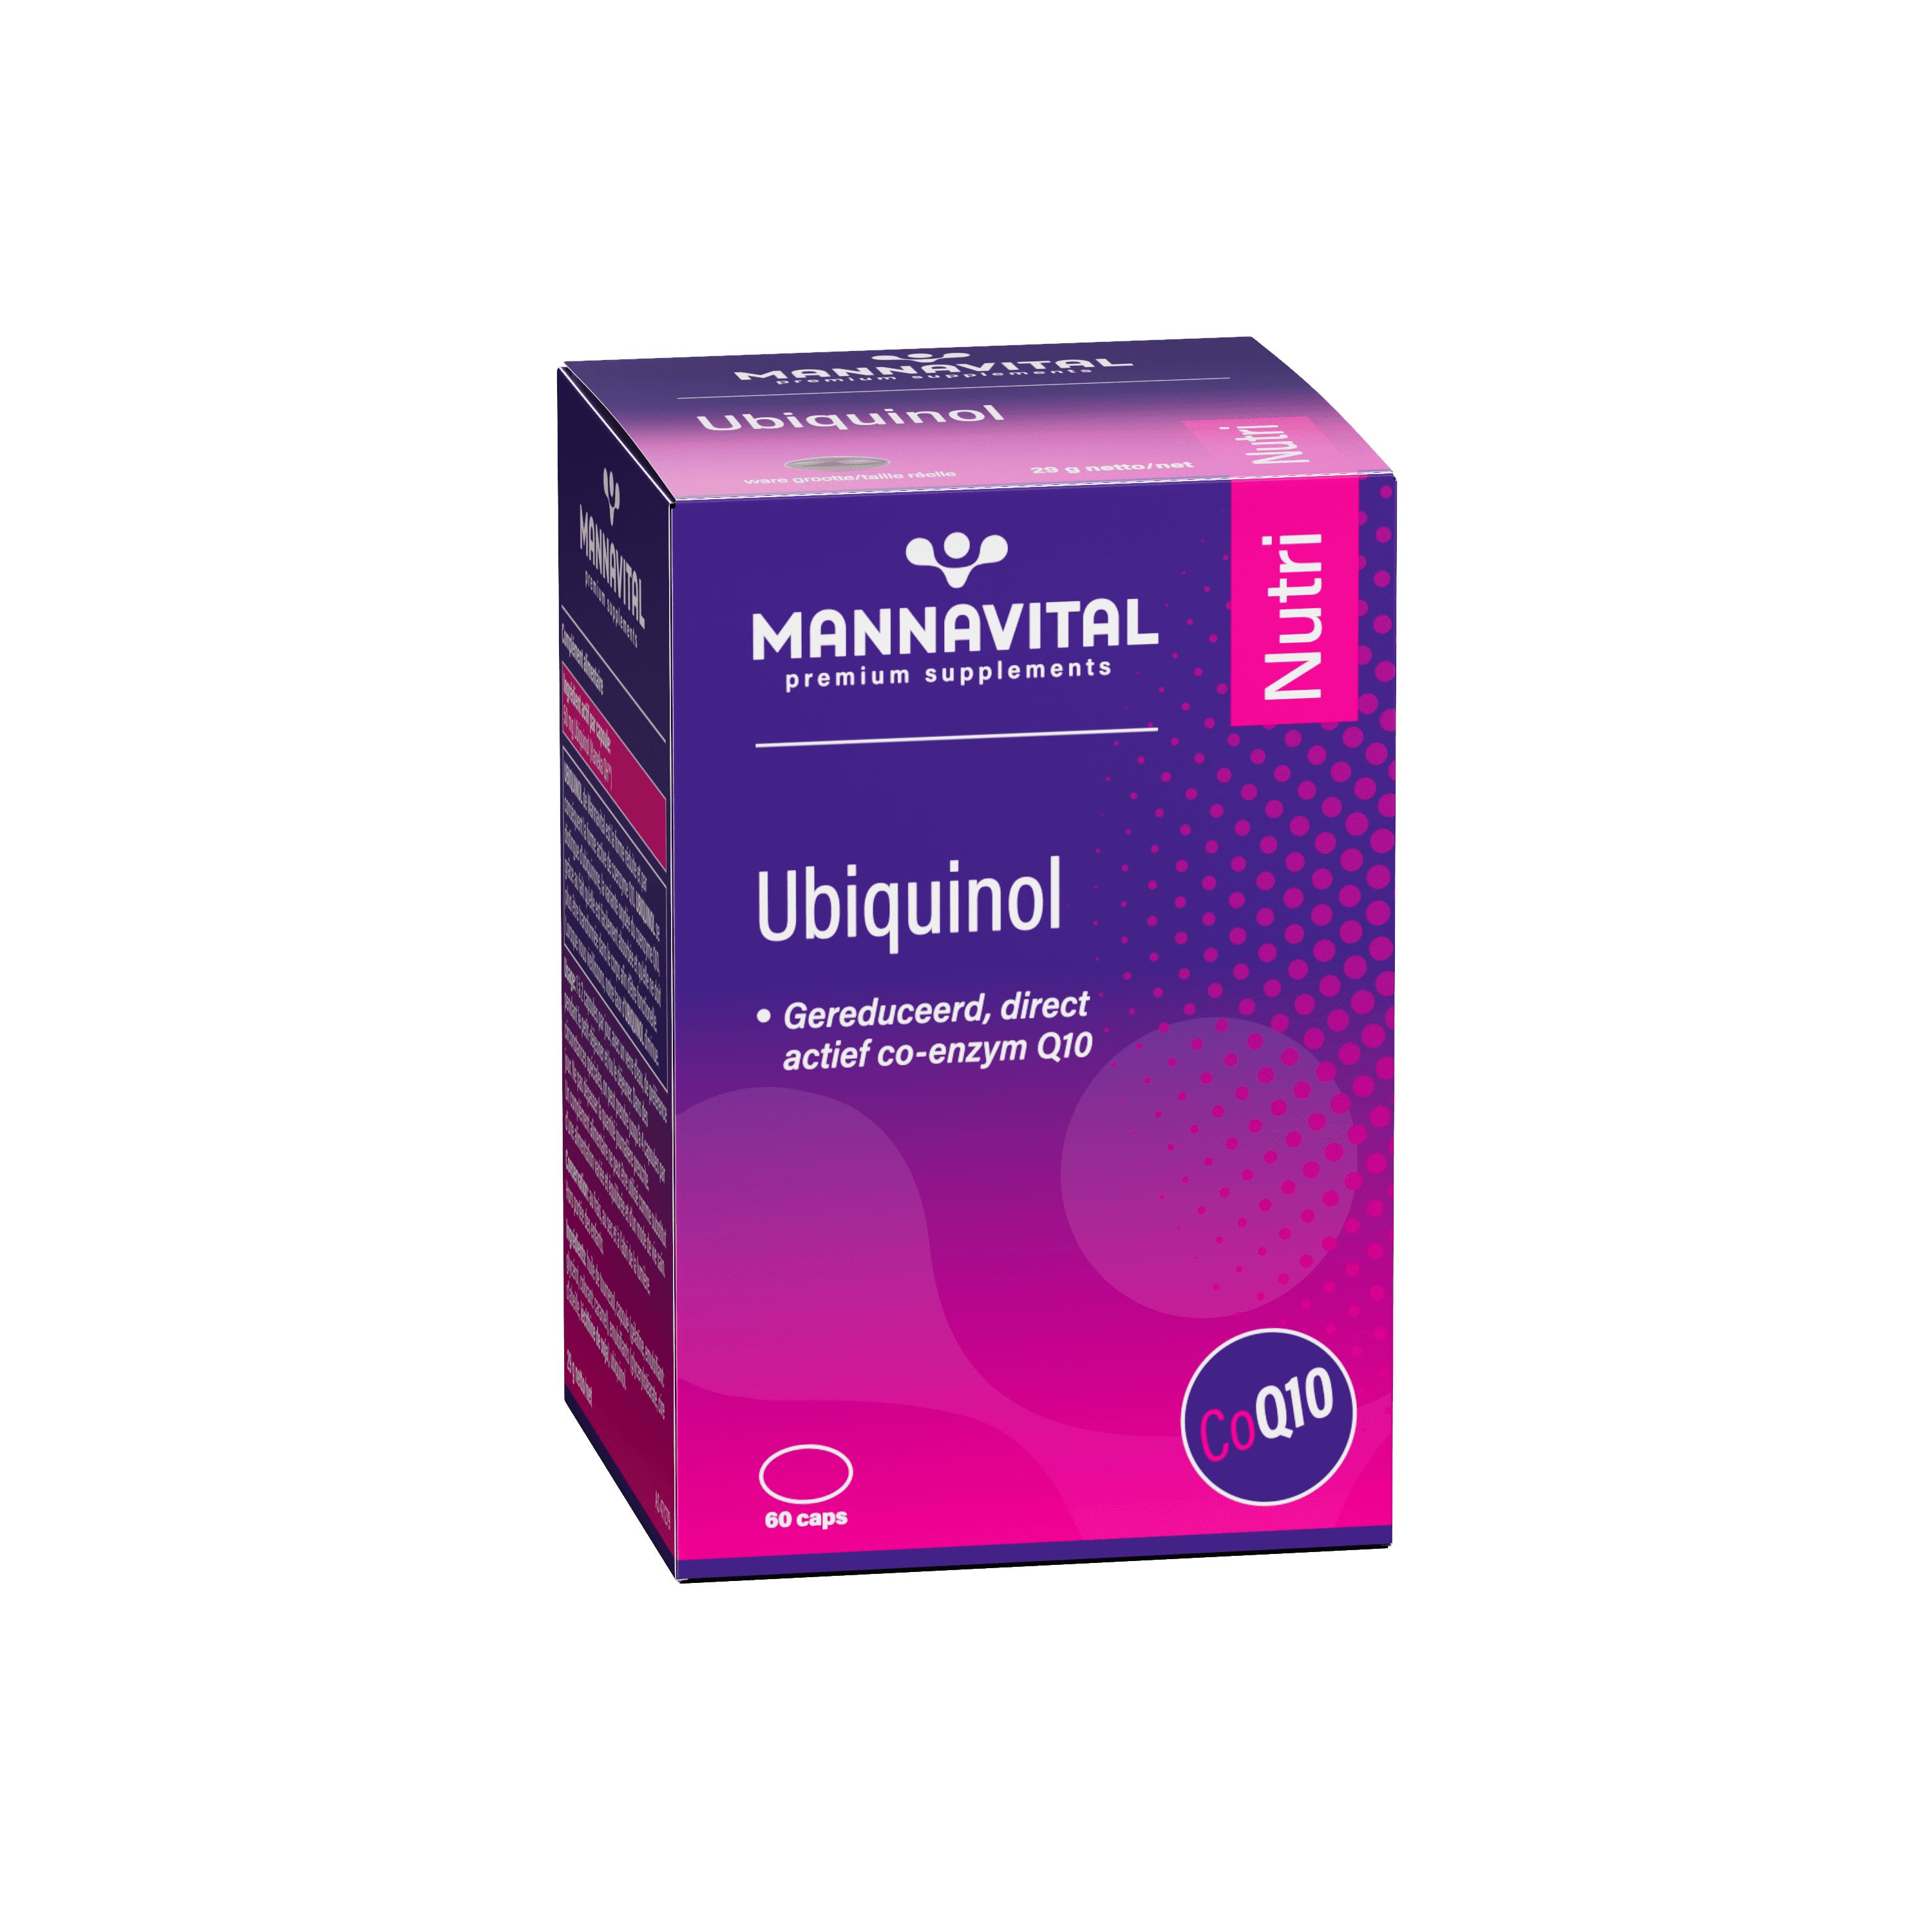 Vitals Ubiquinol 50 mg